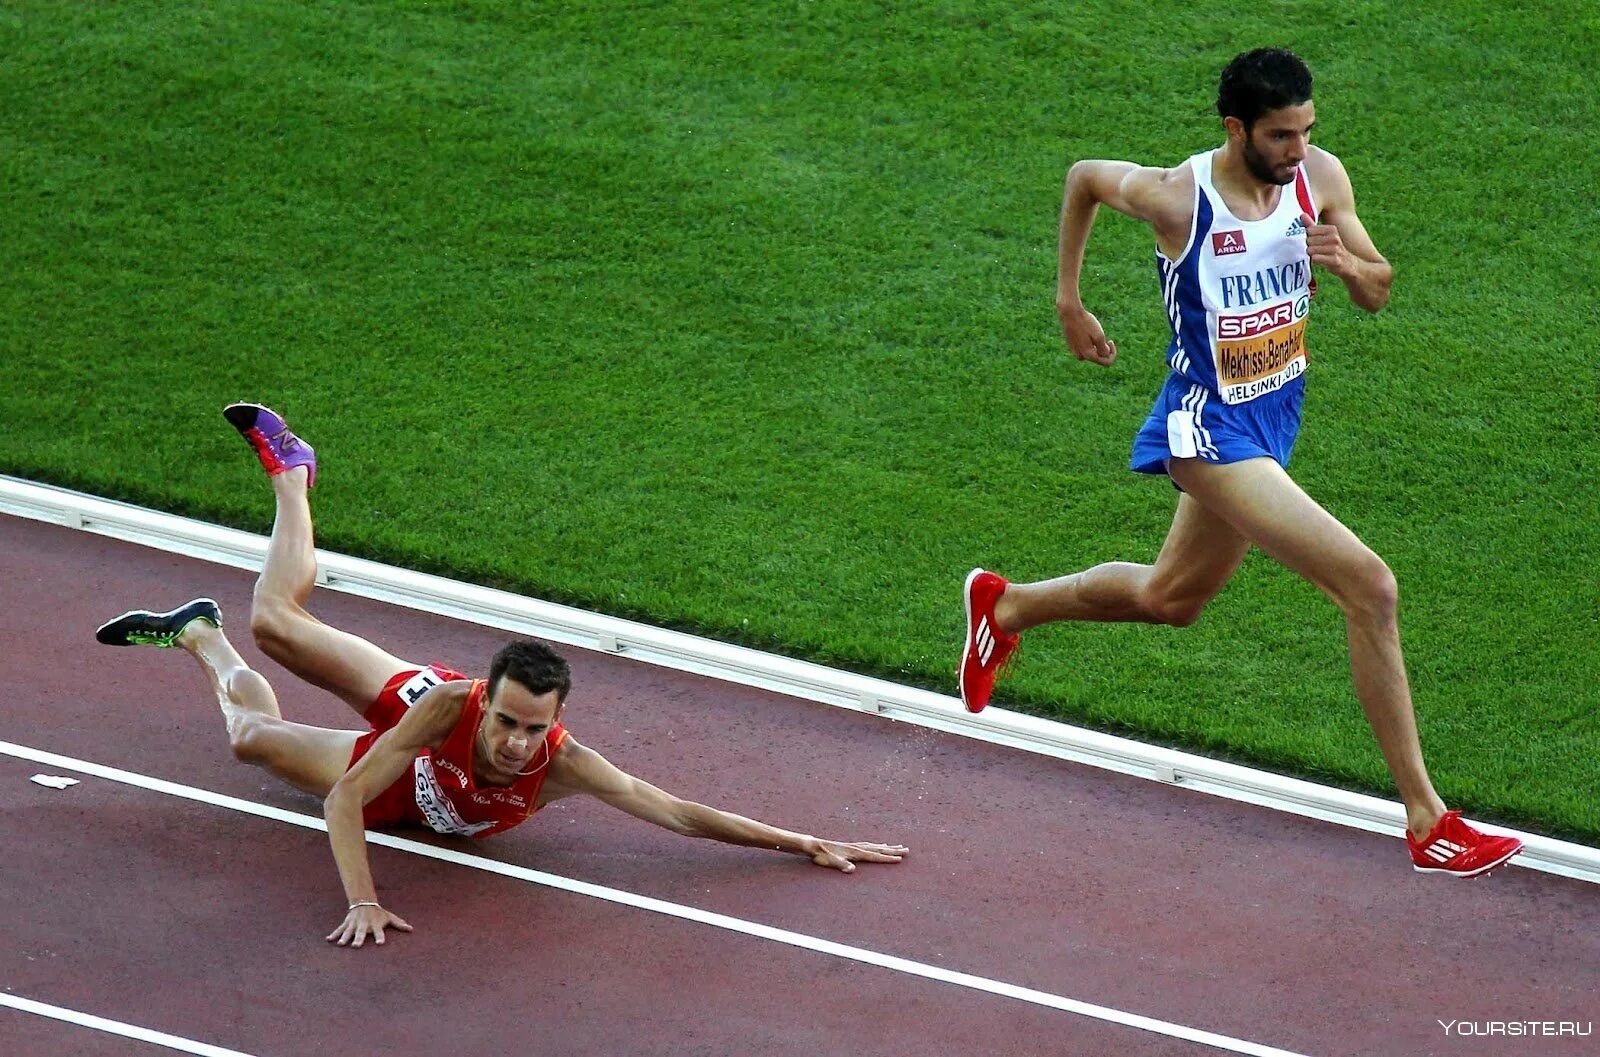 Бегуны перед соревнованиями. Спортсмены. Человек бежит к финишу. Спортсмен падает. Спортсмен перед финишем.